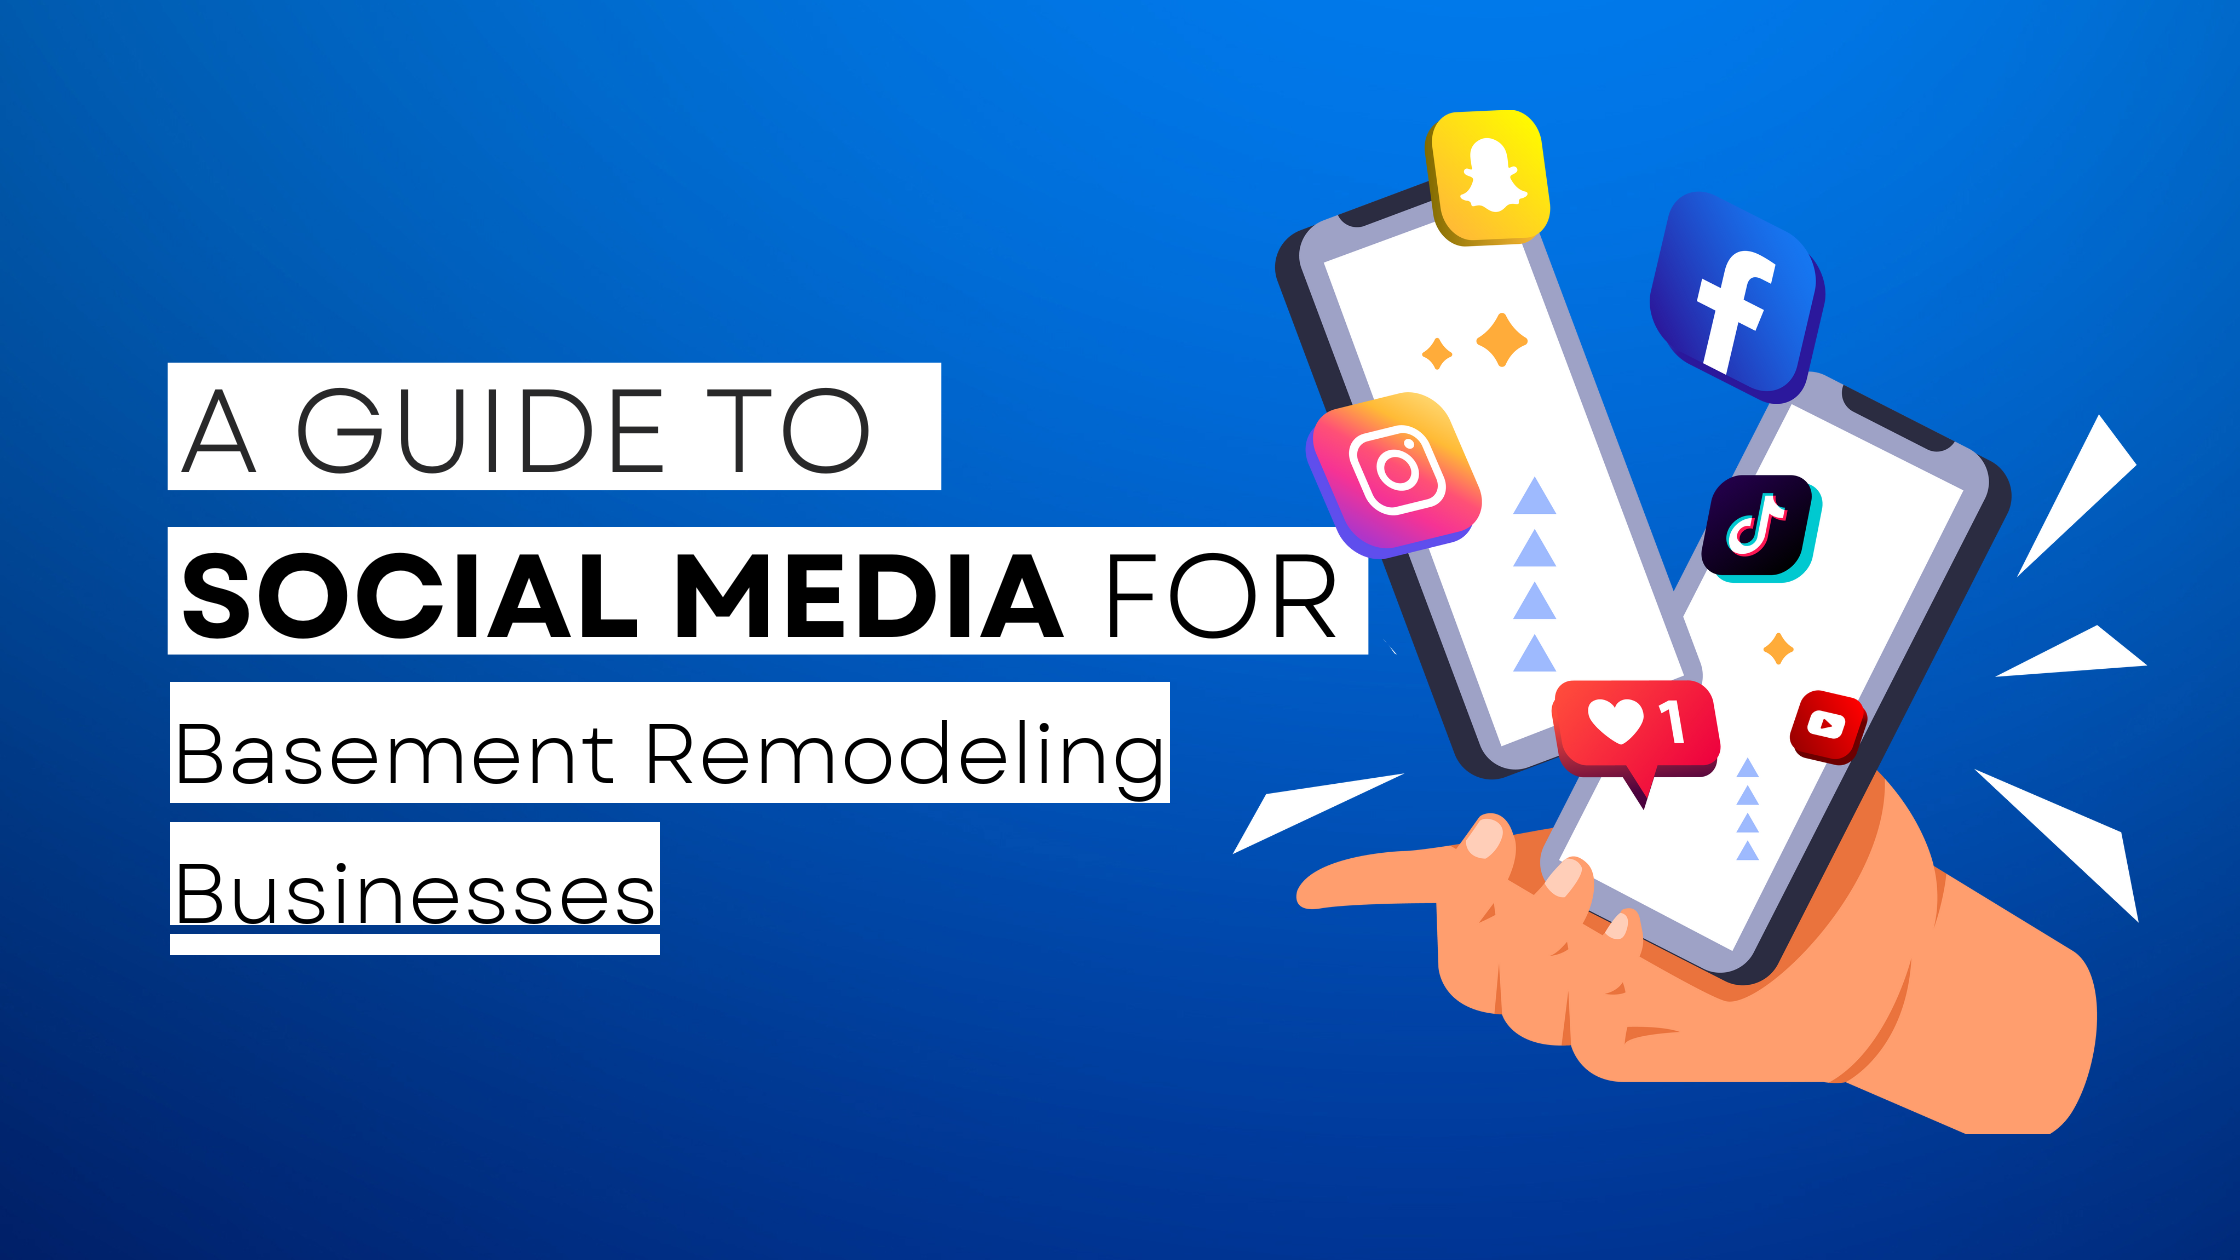 How to start Basement Remodeling  on social media